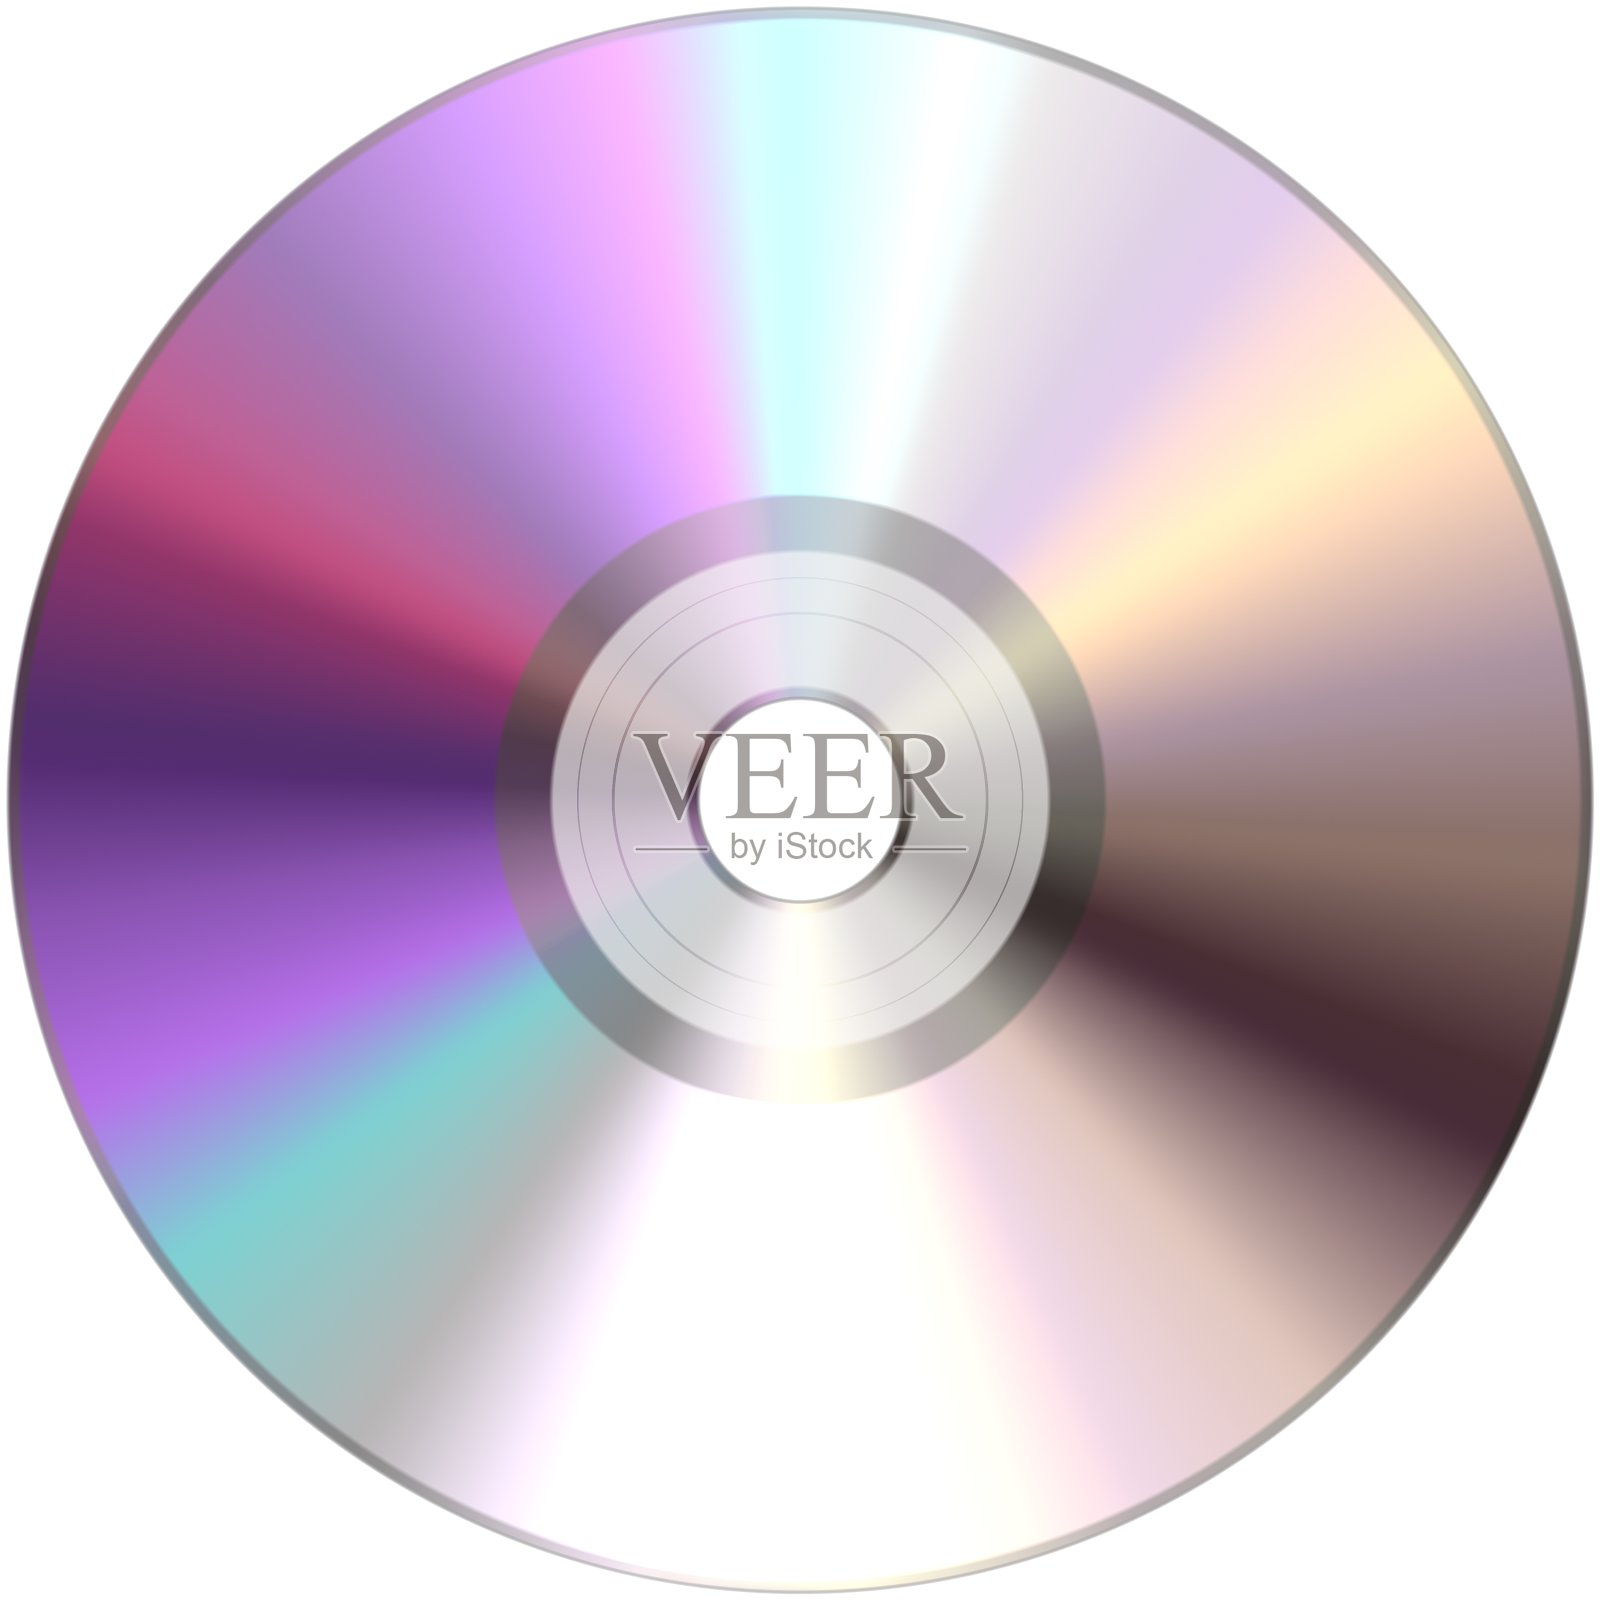 Cd, dvd，蓝光或其他光盘与视频电影，音乐，软件，或其他数据。孤立在白色背景上。设计元素图片